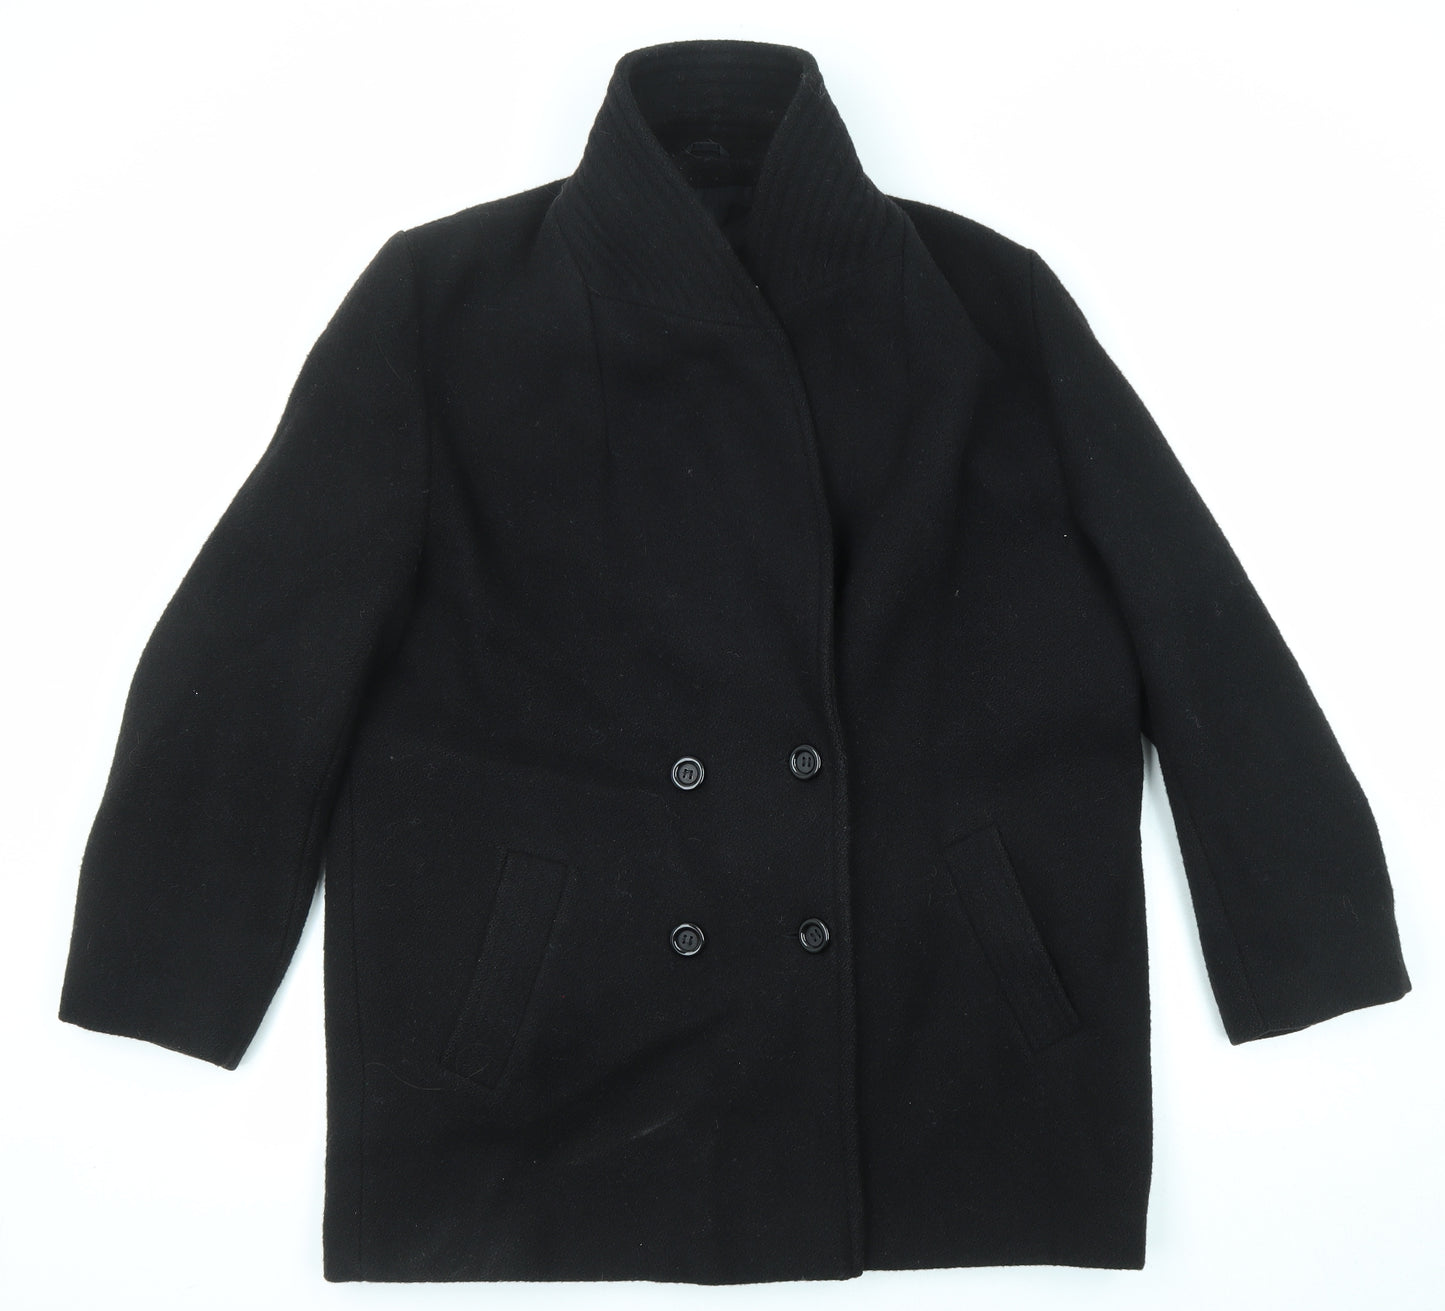 Classics Womens Black Pea Coat Coat Size 16 Button